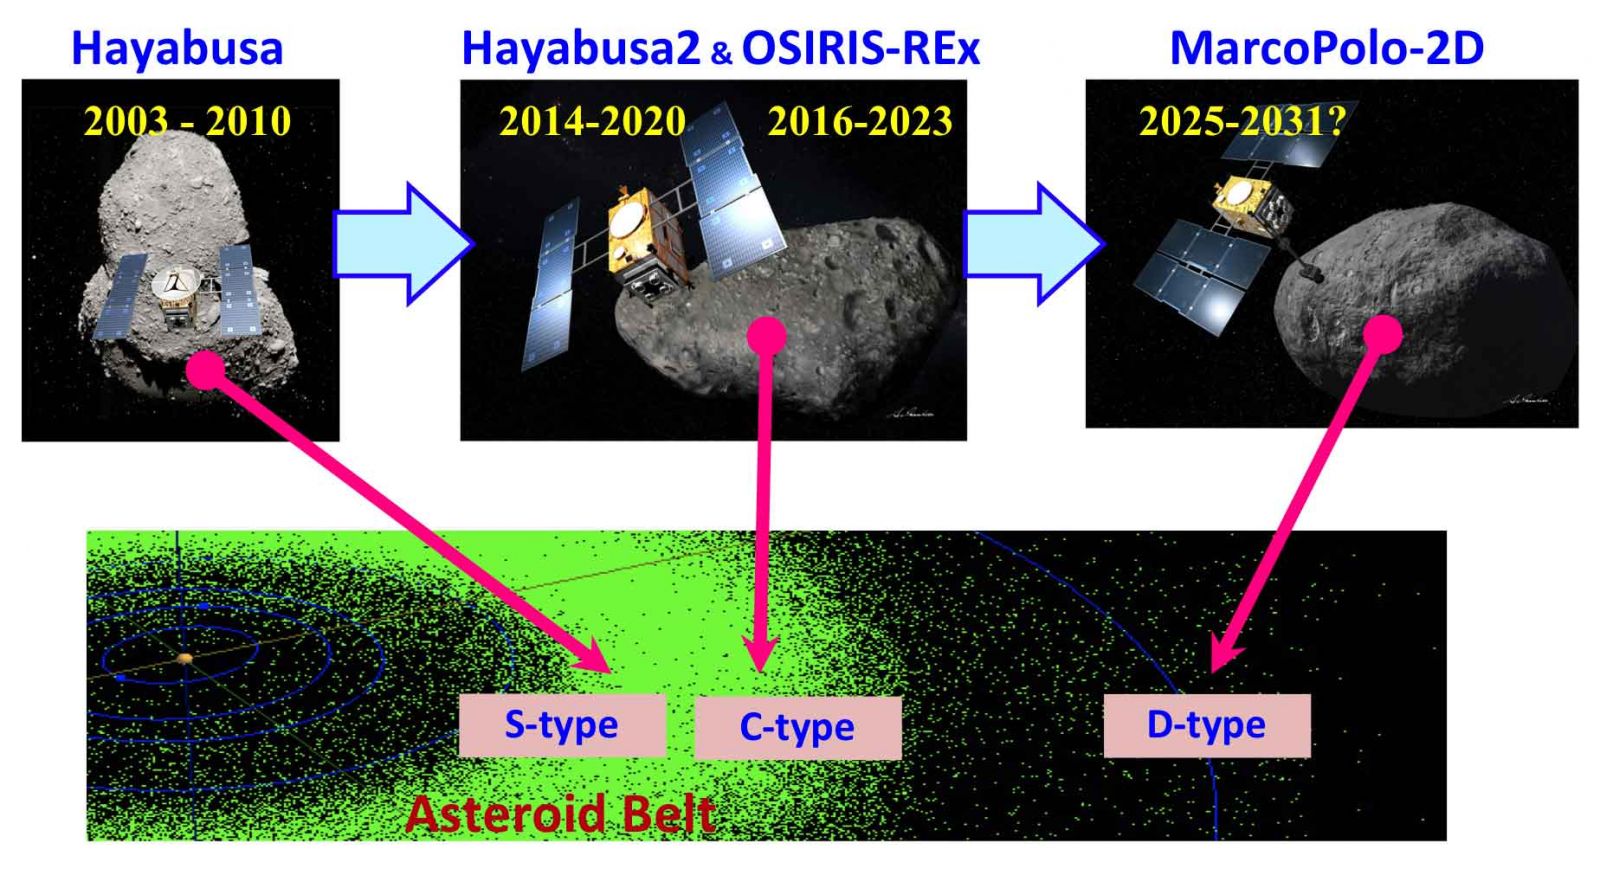 Figure 1 – Primitive asteroid sample return missions